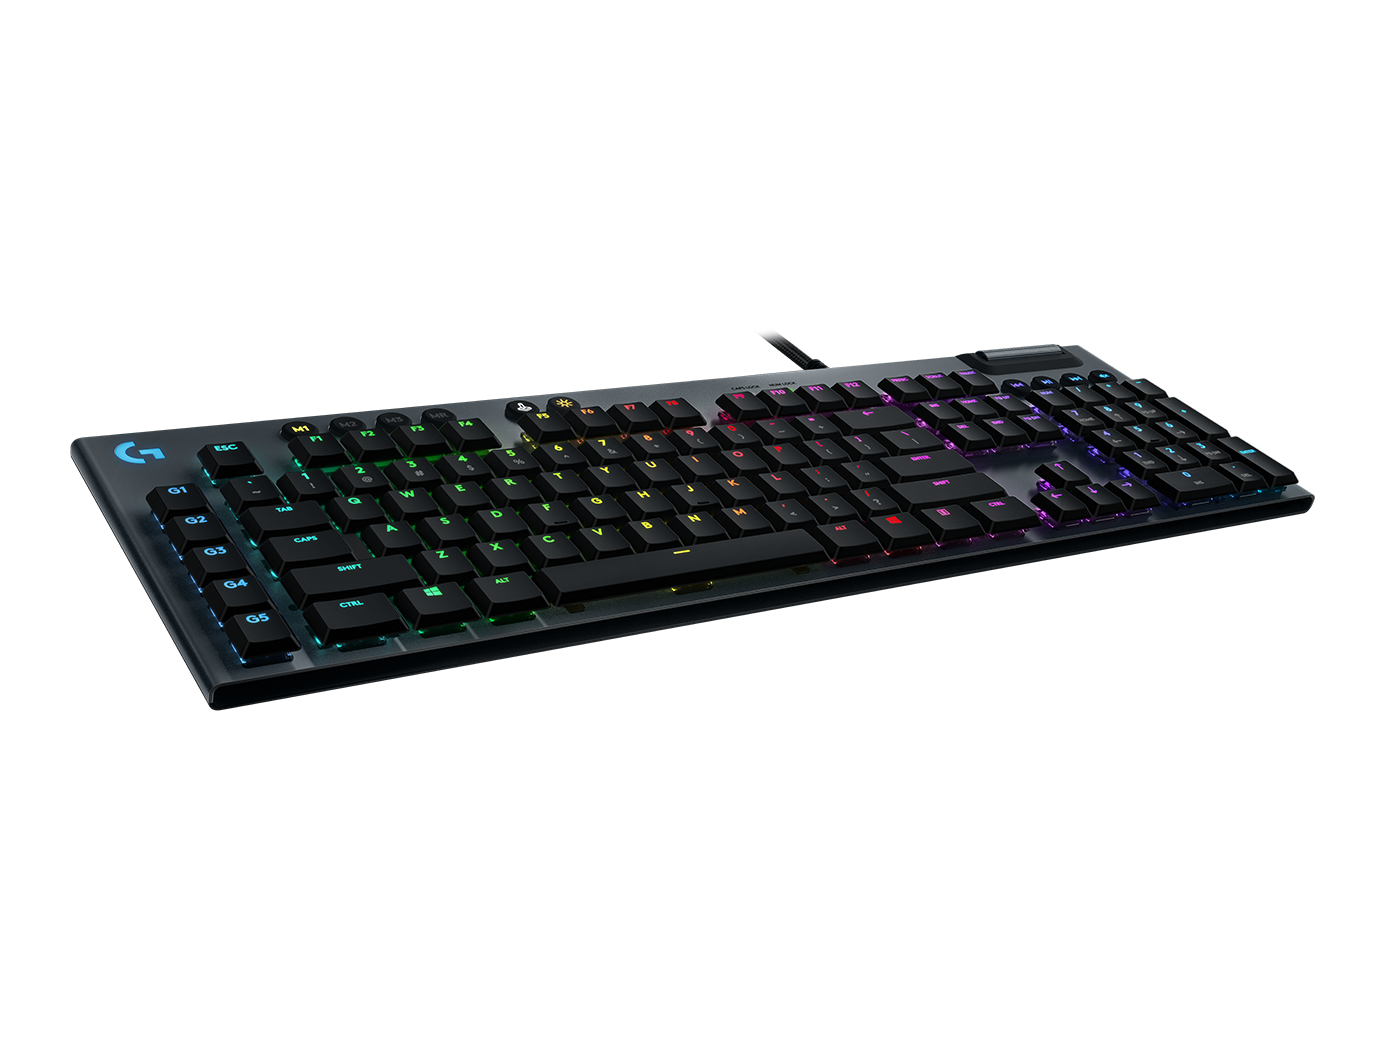 G813 LIGHTSYNC Mechanical Gaming Keyboard